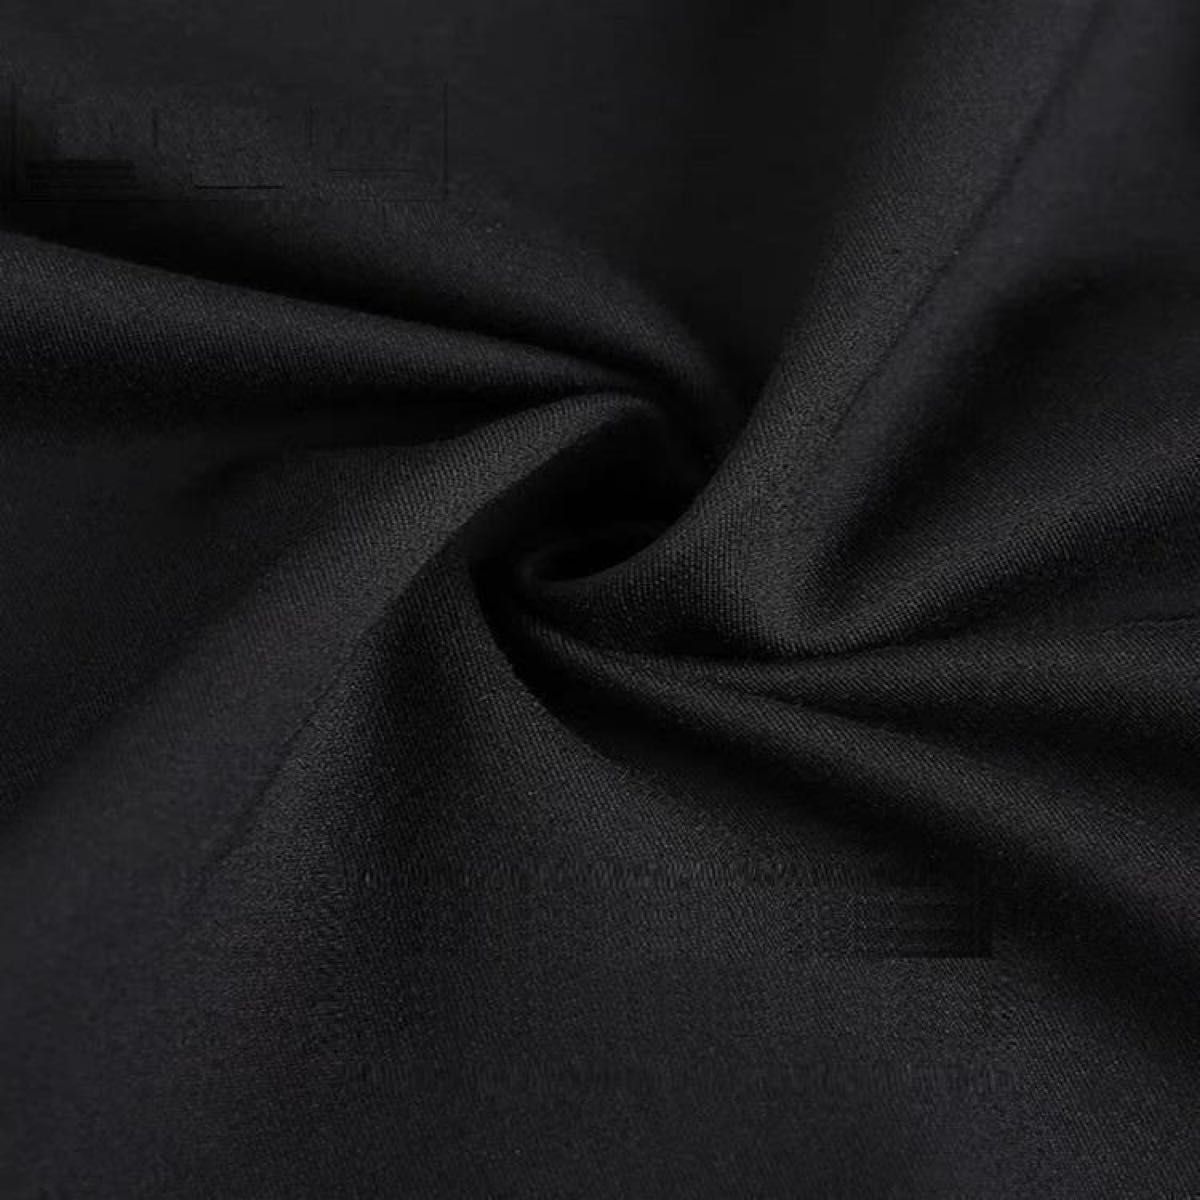 サルエル パンツ 無地 テーパード ストレッチ 九分 ブラック XLサイズ メンズ レディース ワイド パンツ 黒